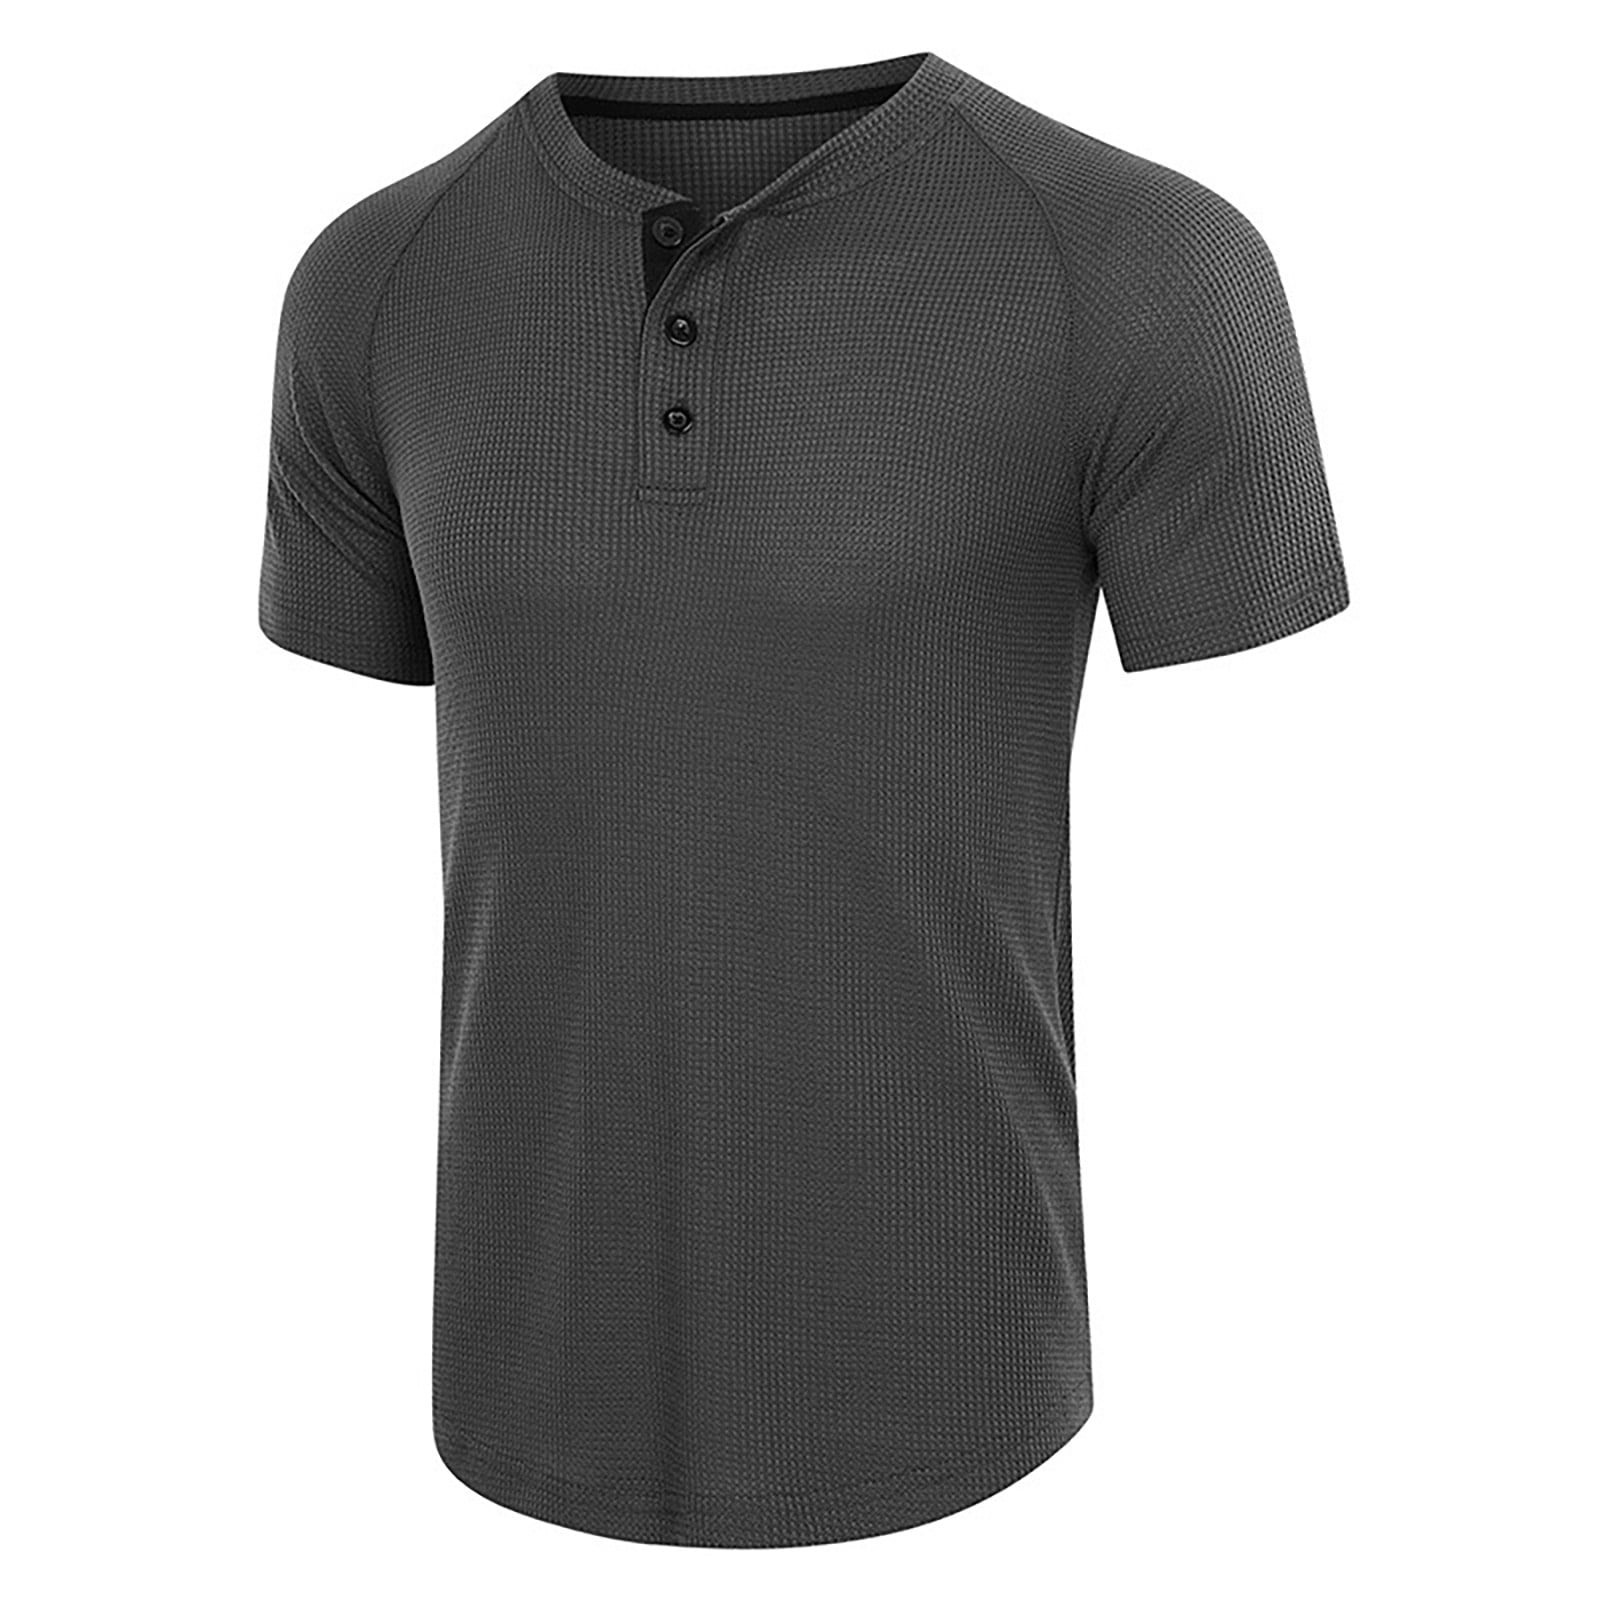 Ruziyoog Men S Active Quick Dry Crew Neck T Shirts Men S Plus Size Shirts Solid Color Short